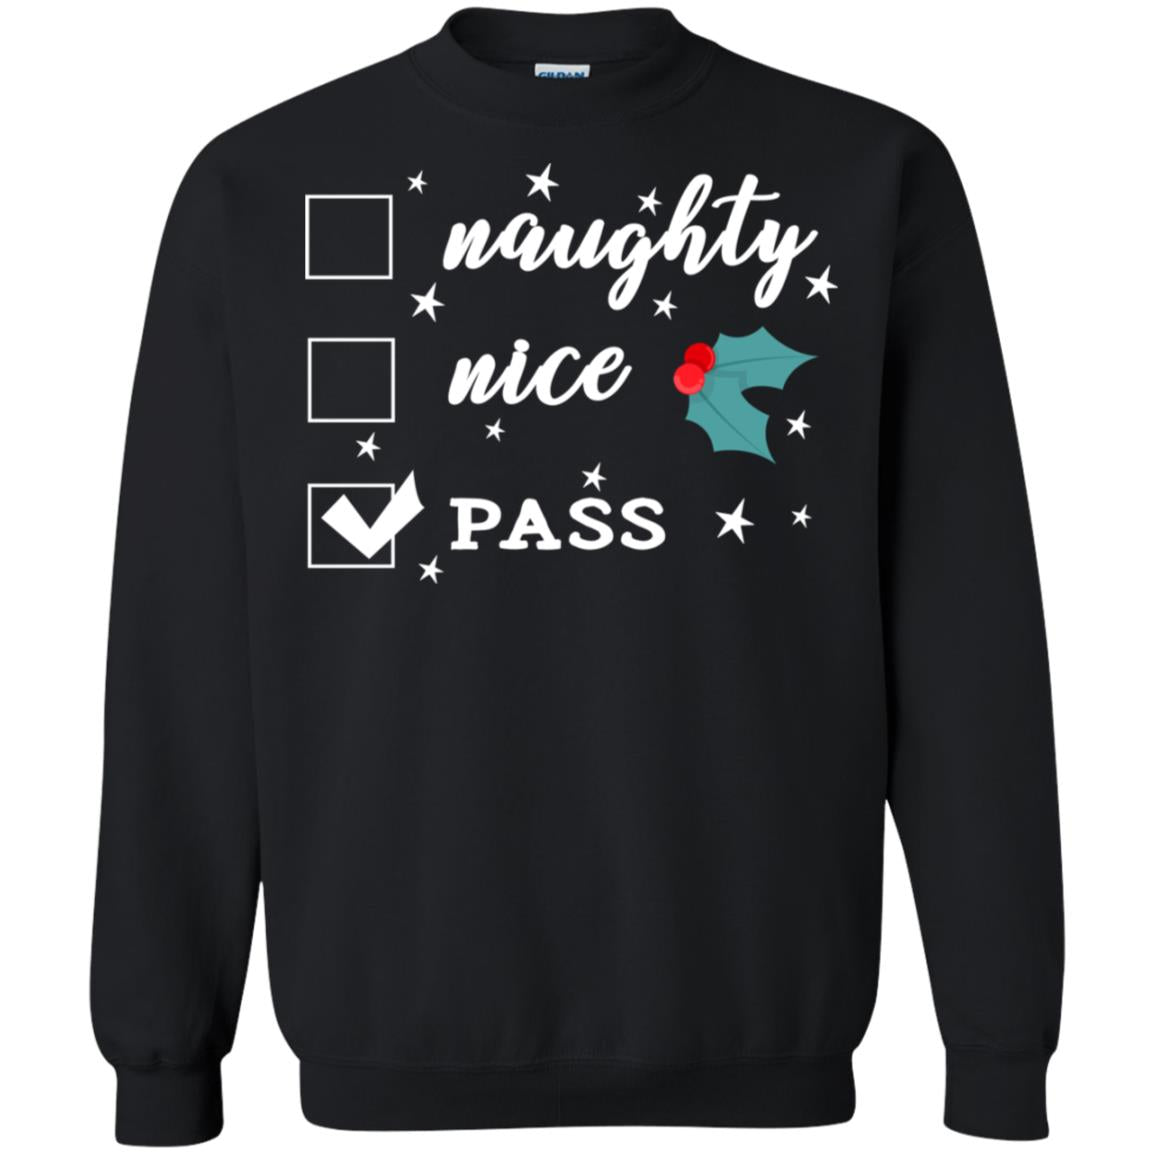 Naughty Nice Or Pass Ugly Christmas Gift Shirt For Mens Or WomensG180 Gildan Crewneck Pullover Sweatshirt 8 oz.